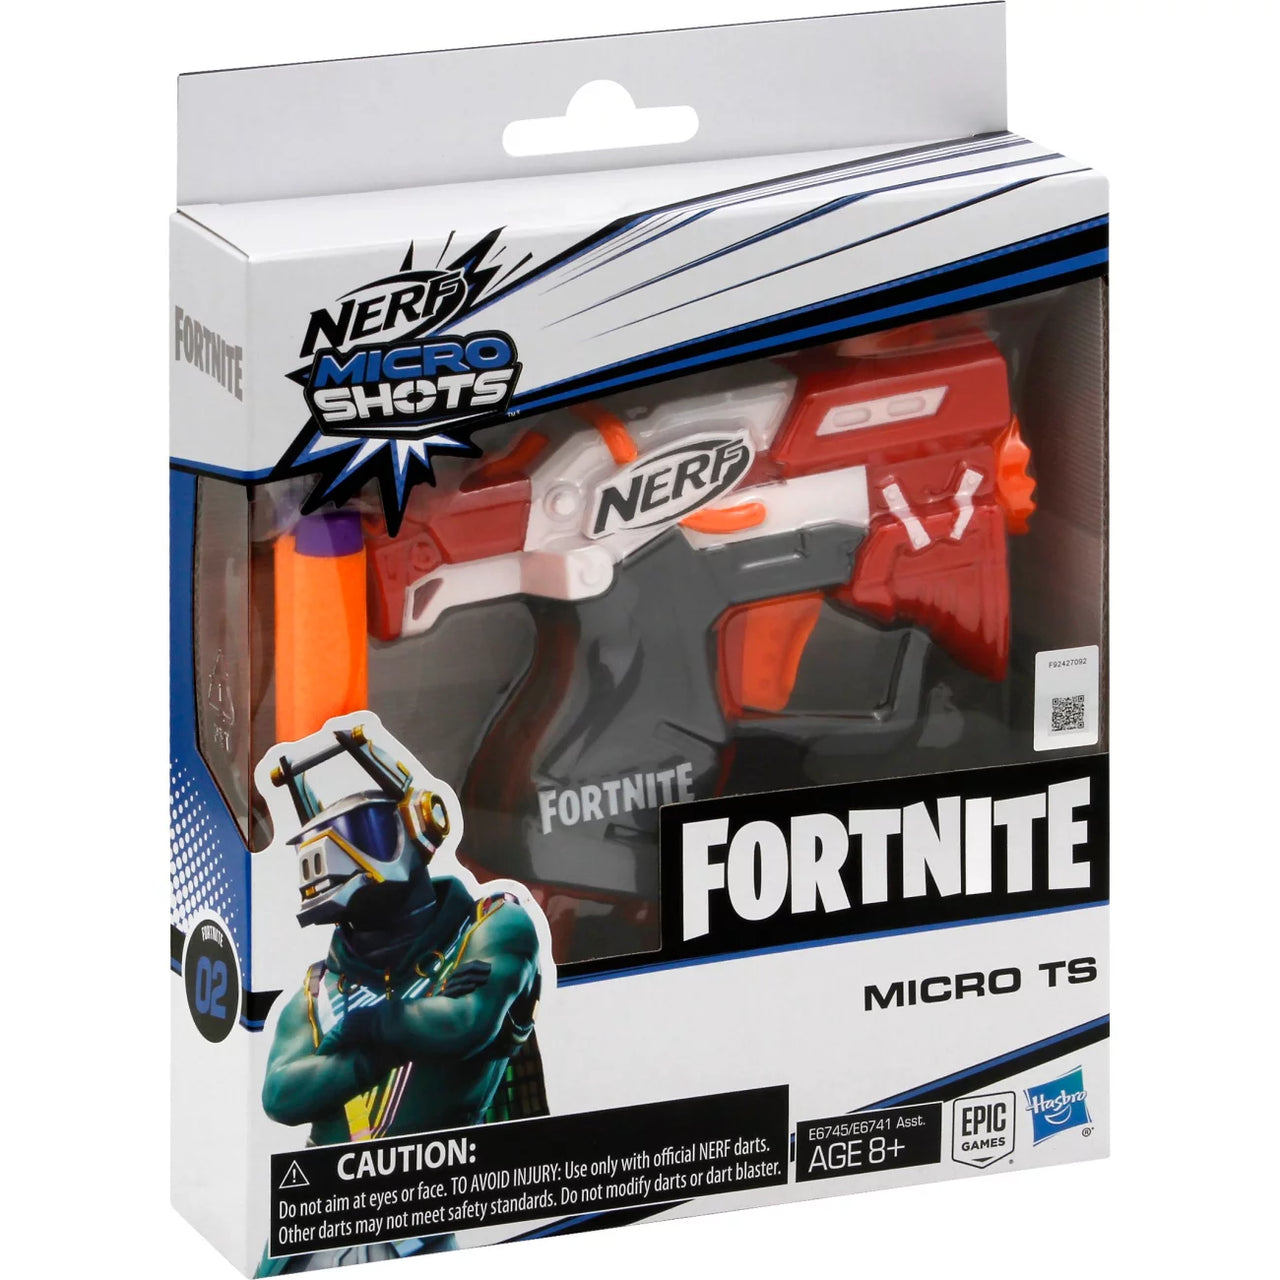 Nerf Microshots Fortnite Blaster - Micro TS